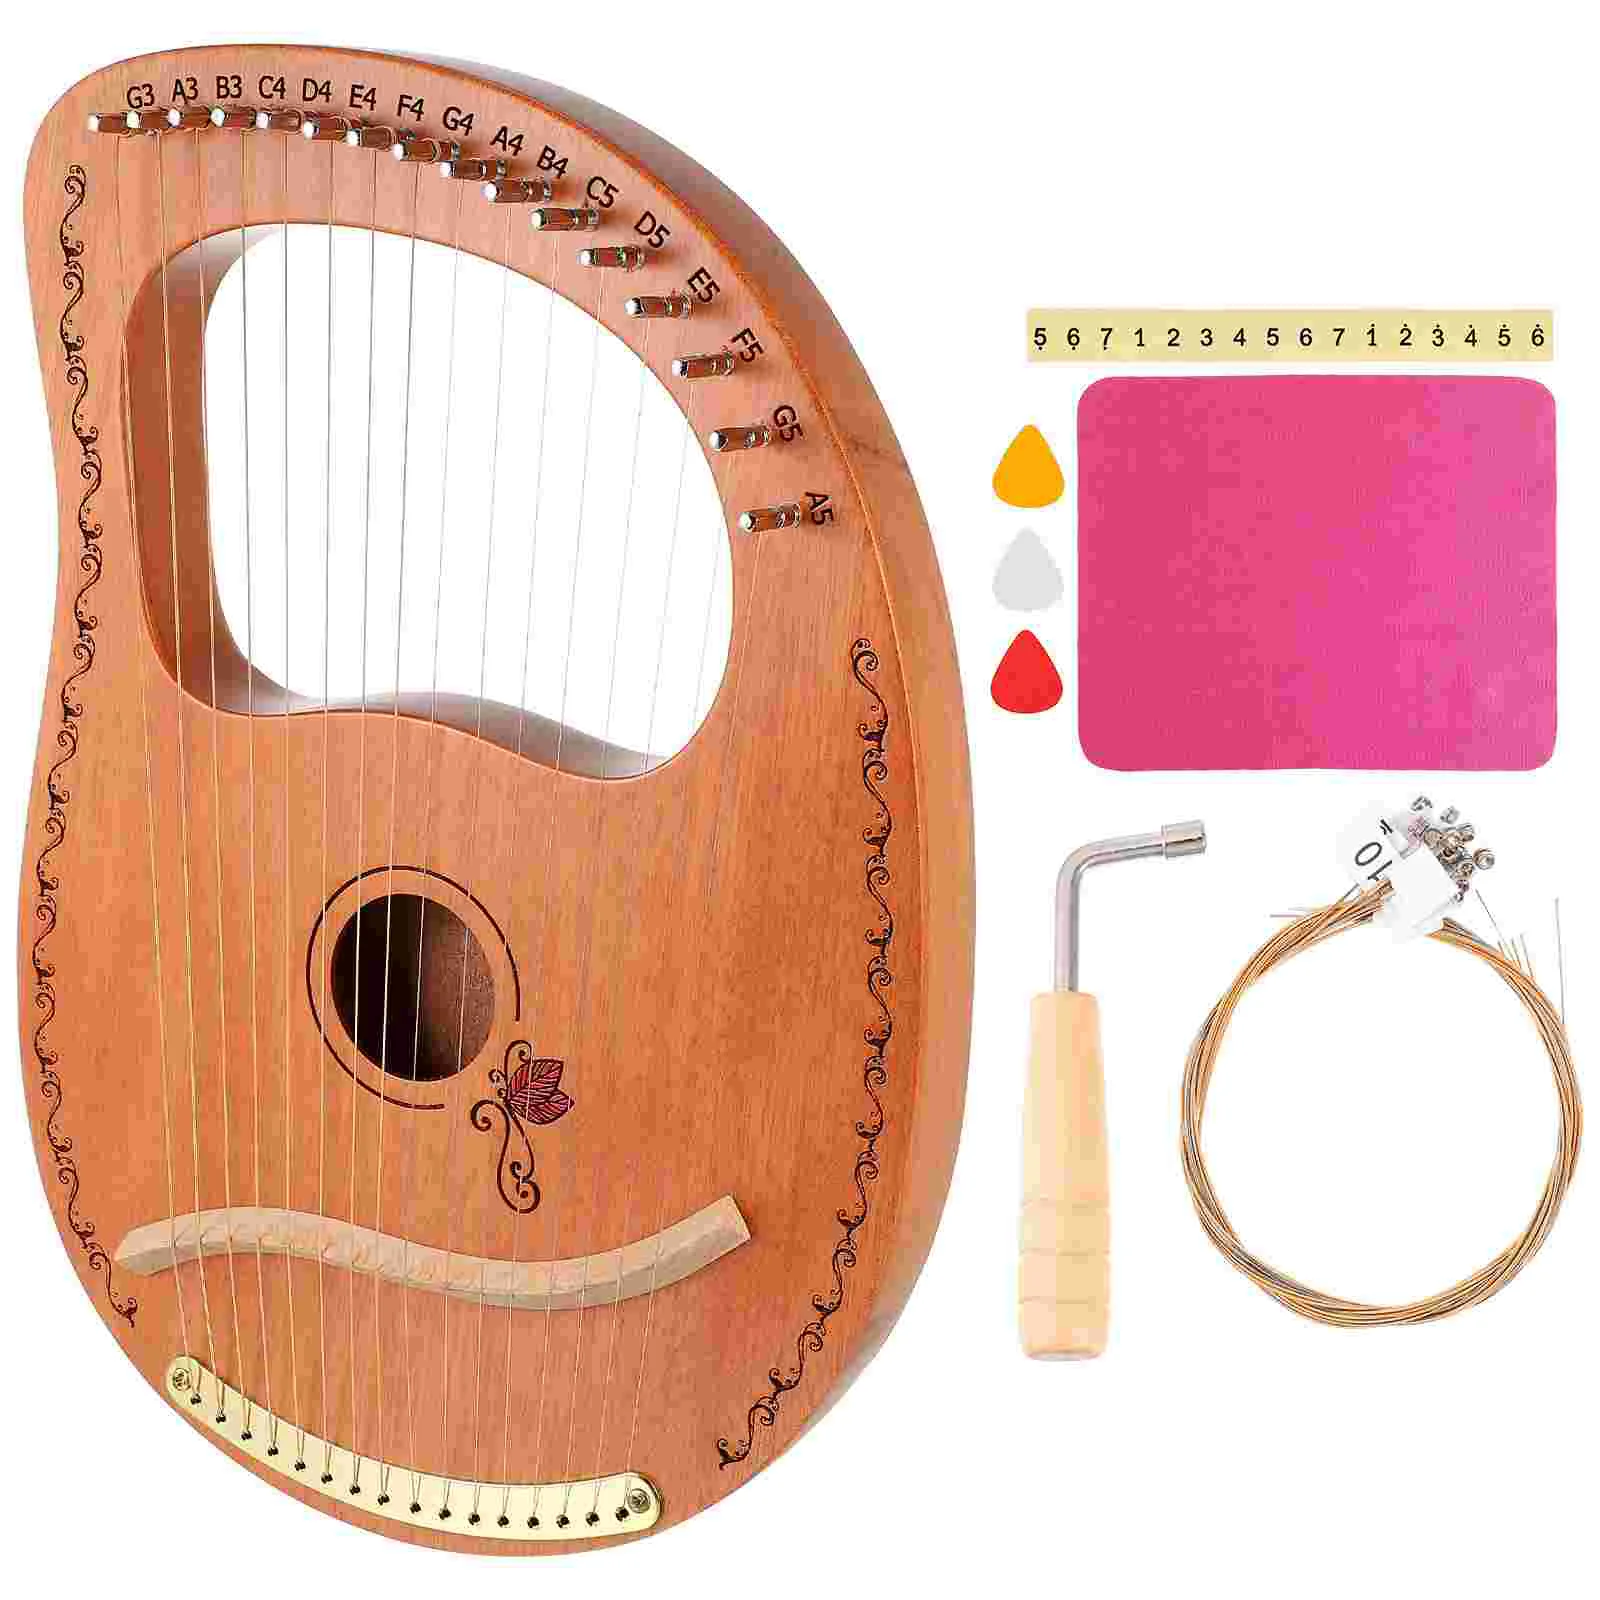 

16 струн Lyre Wood 16 струн Harp практичный Деревянный инструмент музыкальные нежные инструменты